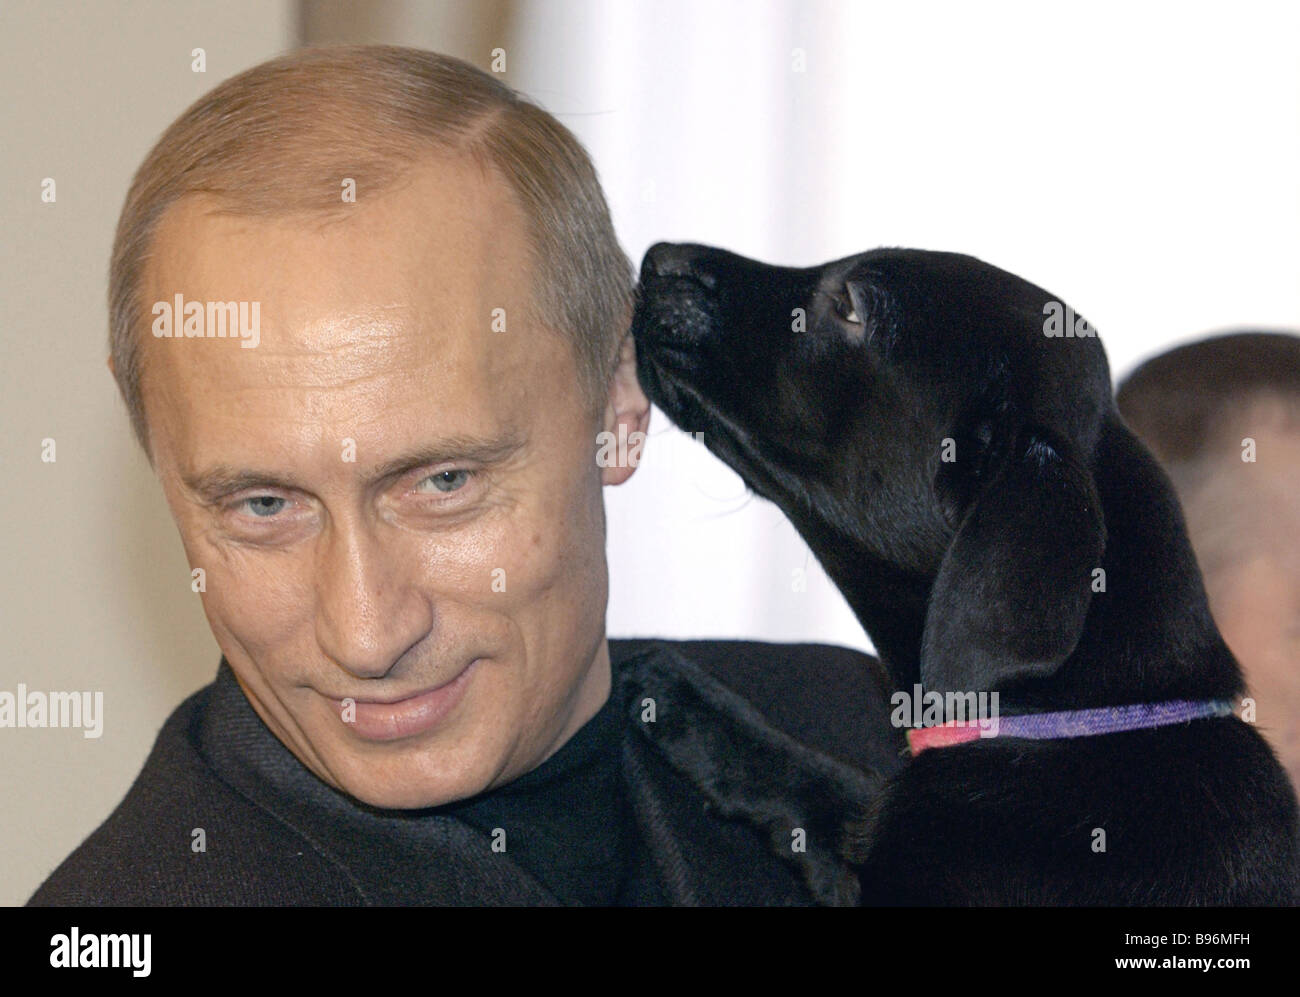 el-presidente-ruso-vladimir-putin-con-un-cachorro-nacido-a-su-perro-labrador-connie-el-cachorro-se-presento-a-una-nina-de-6-anos-b96mfh.jpg